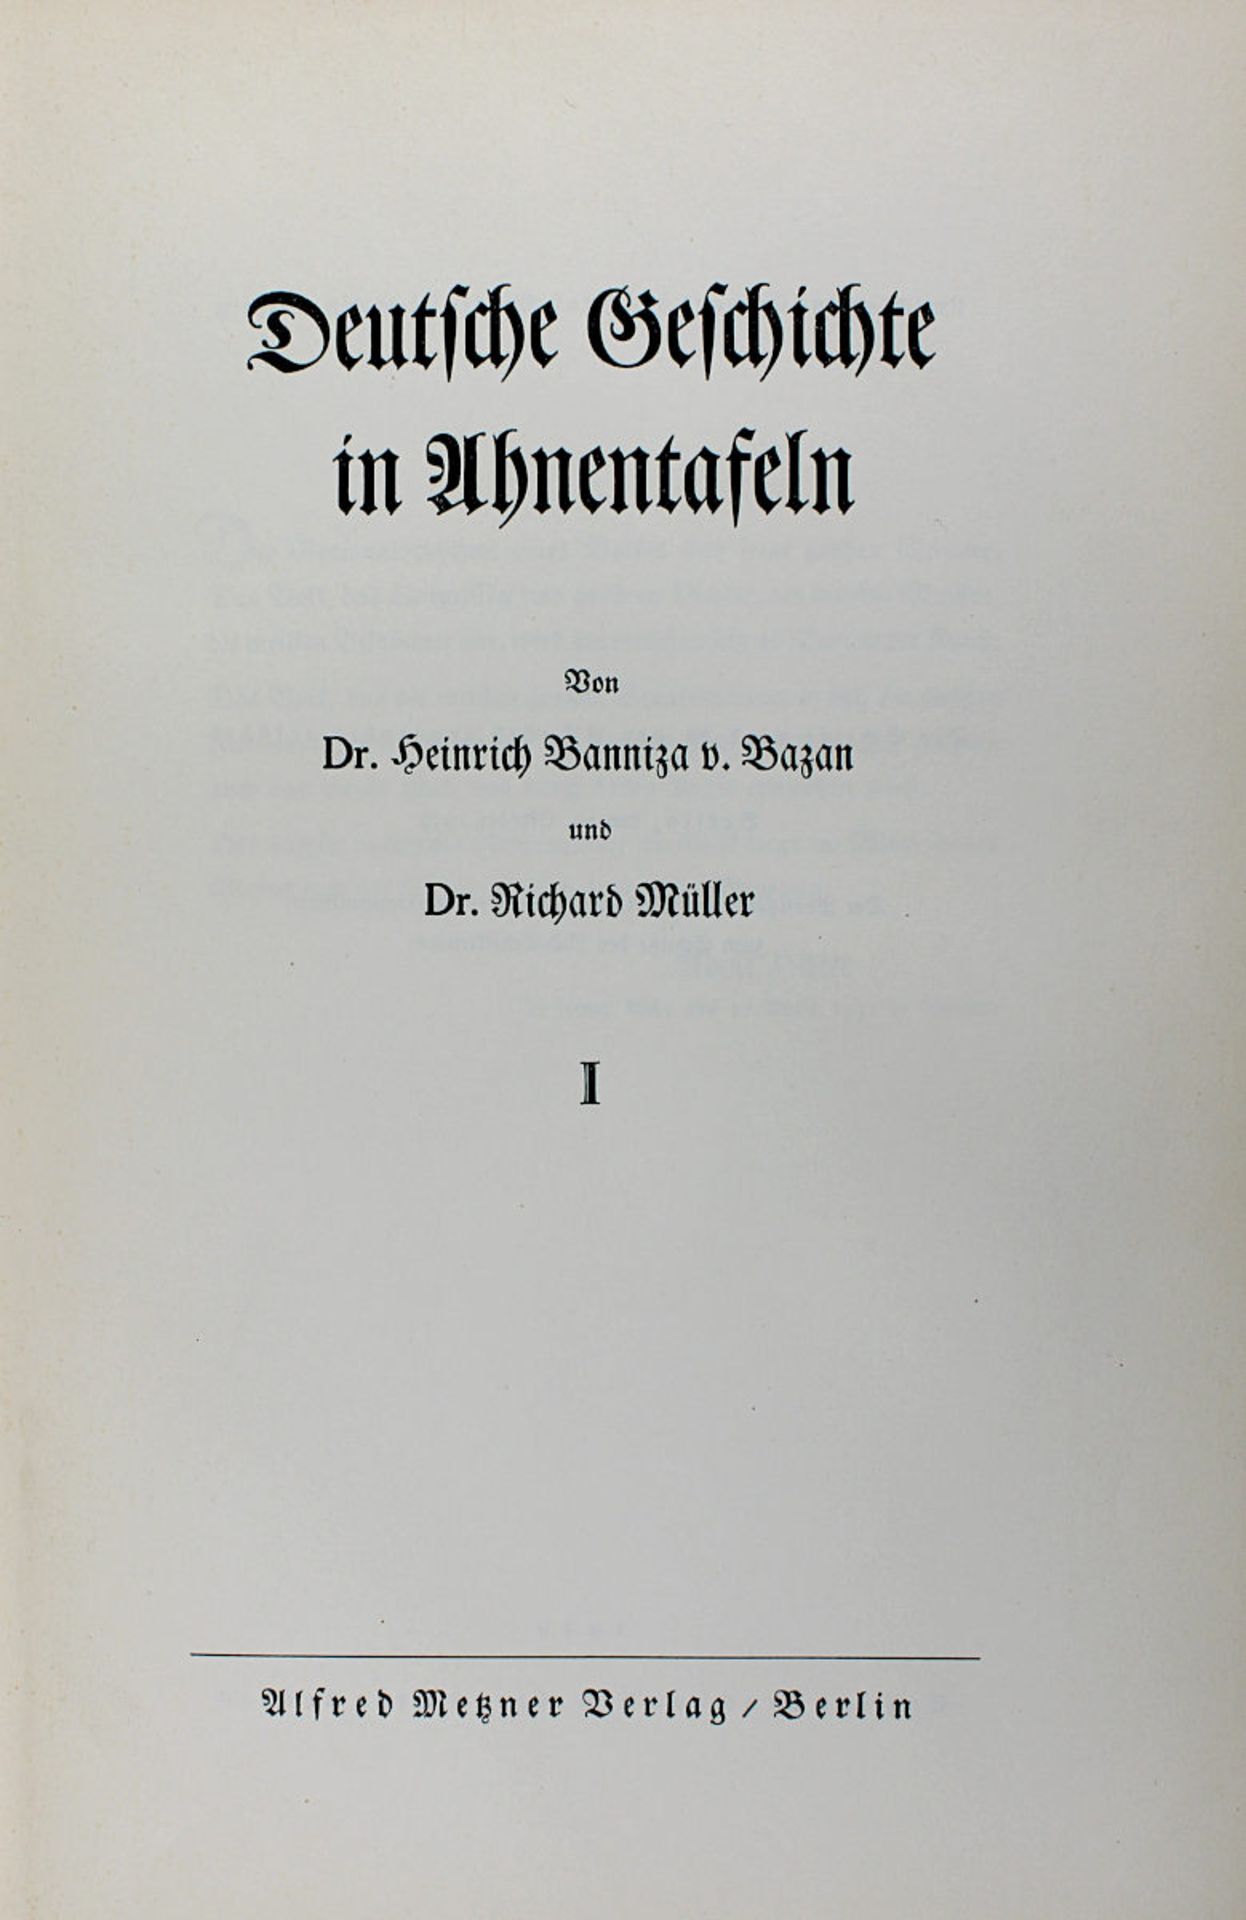 Banniza von Bazan, Heinrich, "Deutsche Geschichte in Ahnentafeln", 2 Bände, Alfred-Metzner-Verlag